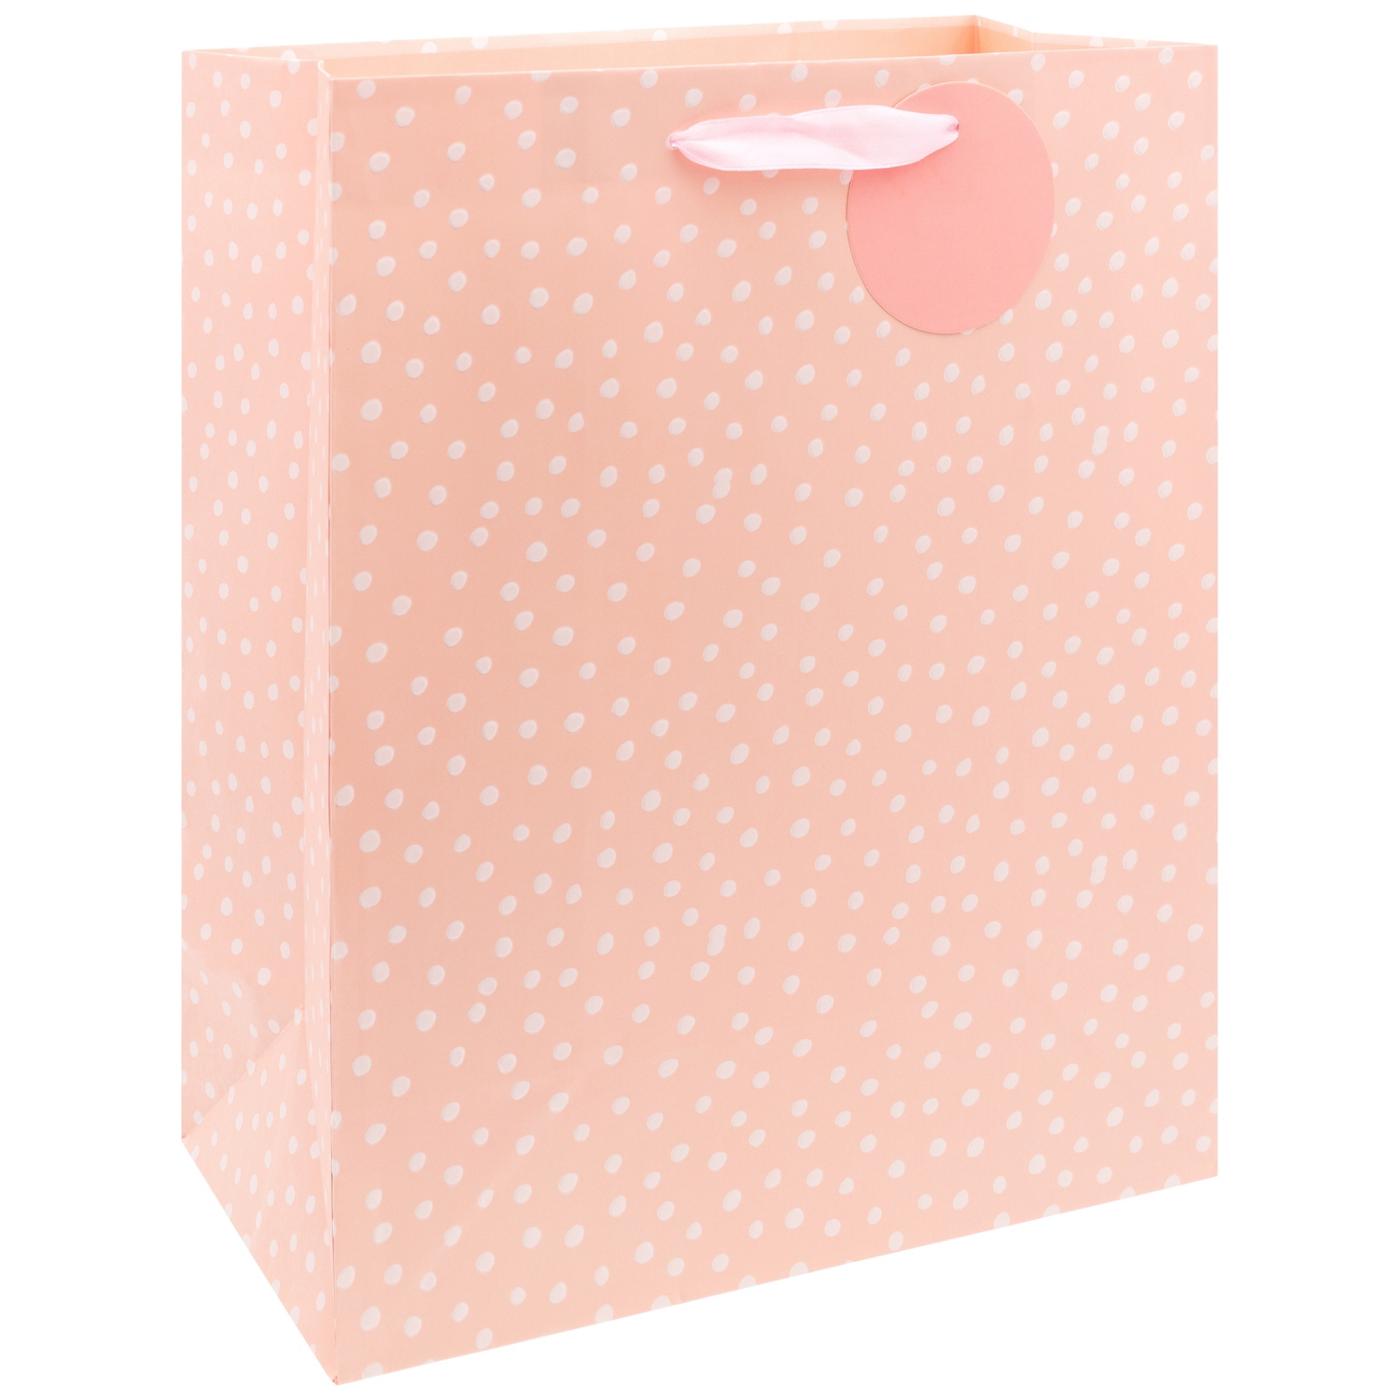 IG Design Pink Dots Paper Gift Bag; image 2 of 2